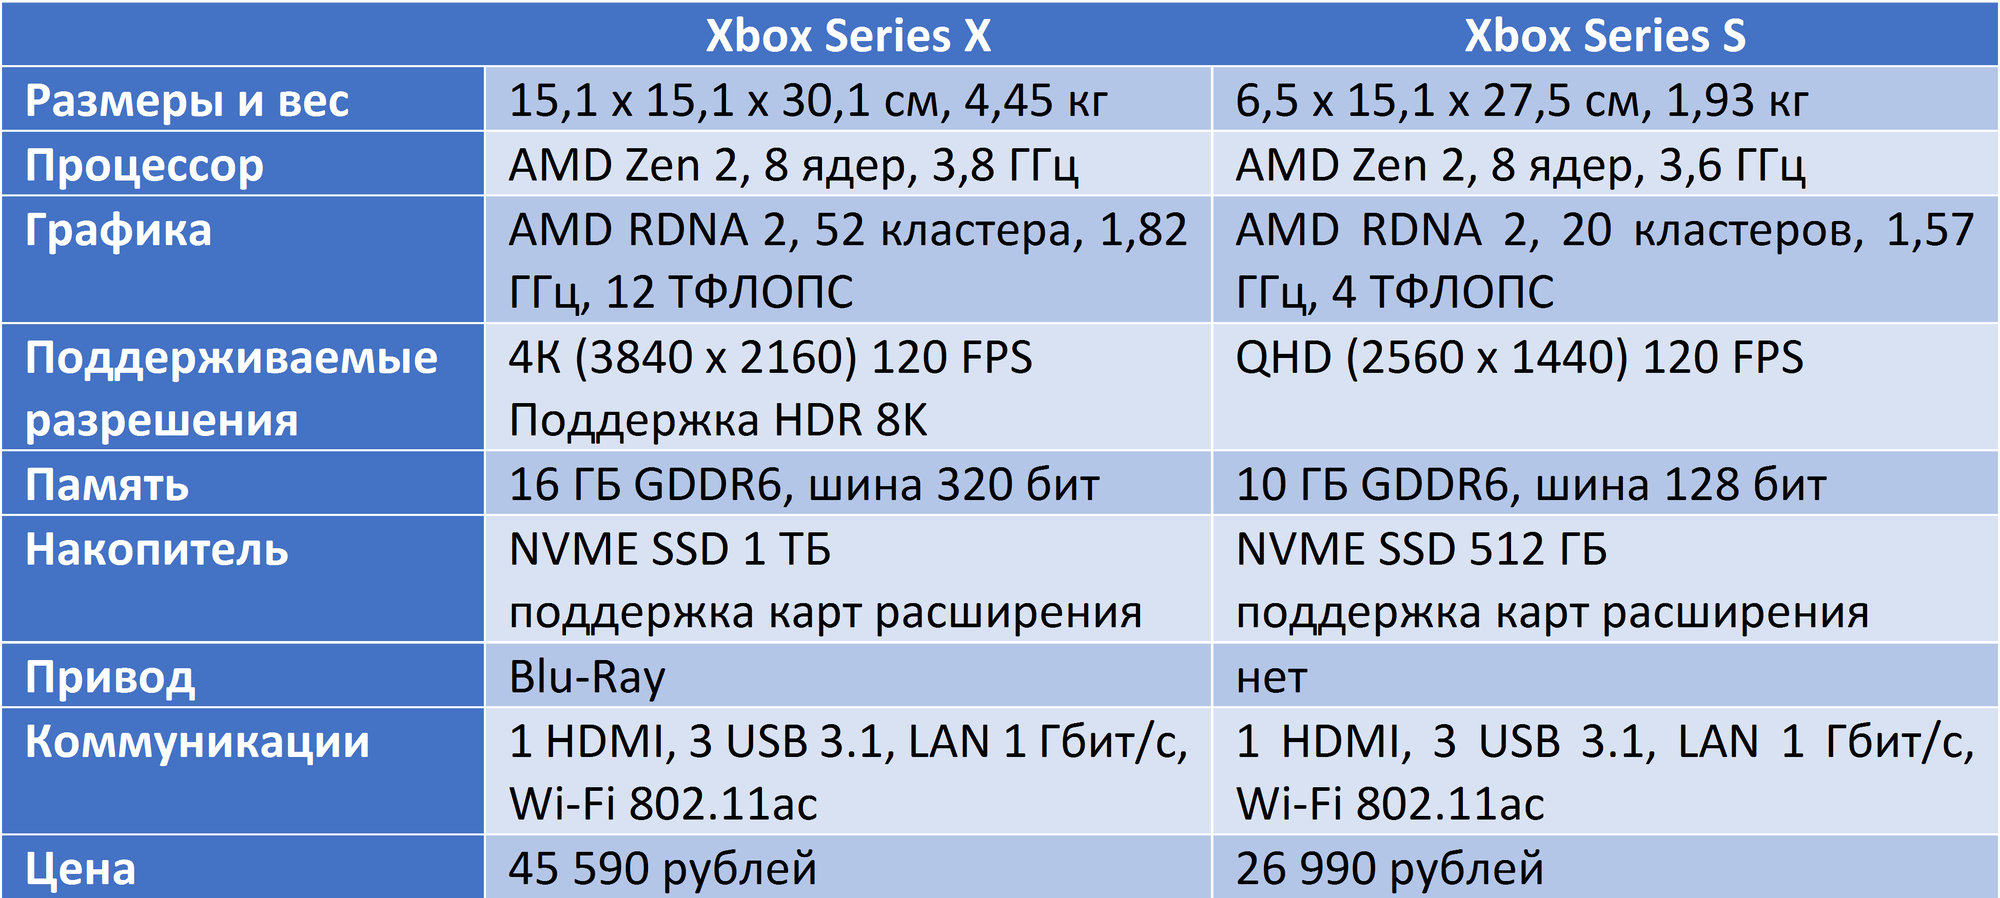 Xbox one x характеристики железа. Xbox Series 1s характеристики. Сравнение характеристик Xbox. Характеристики консолей Xbox. Xbox s vs xbox x сравнение